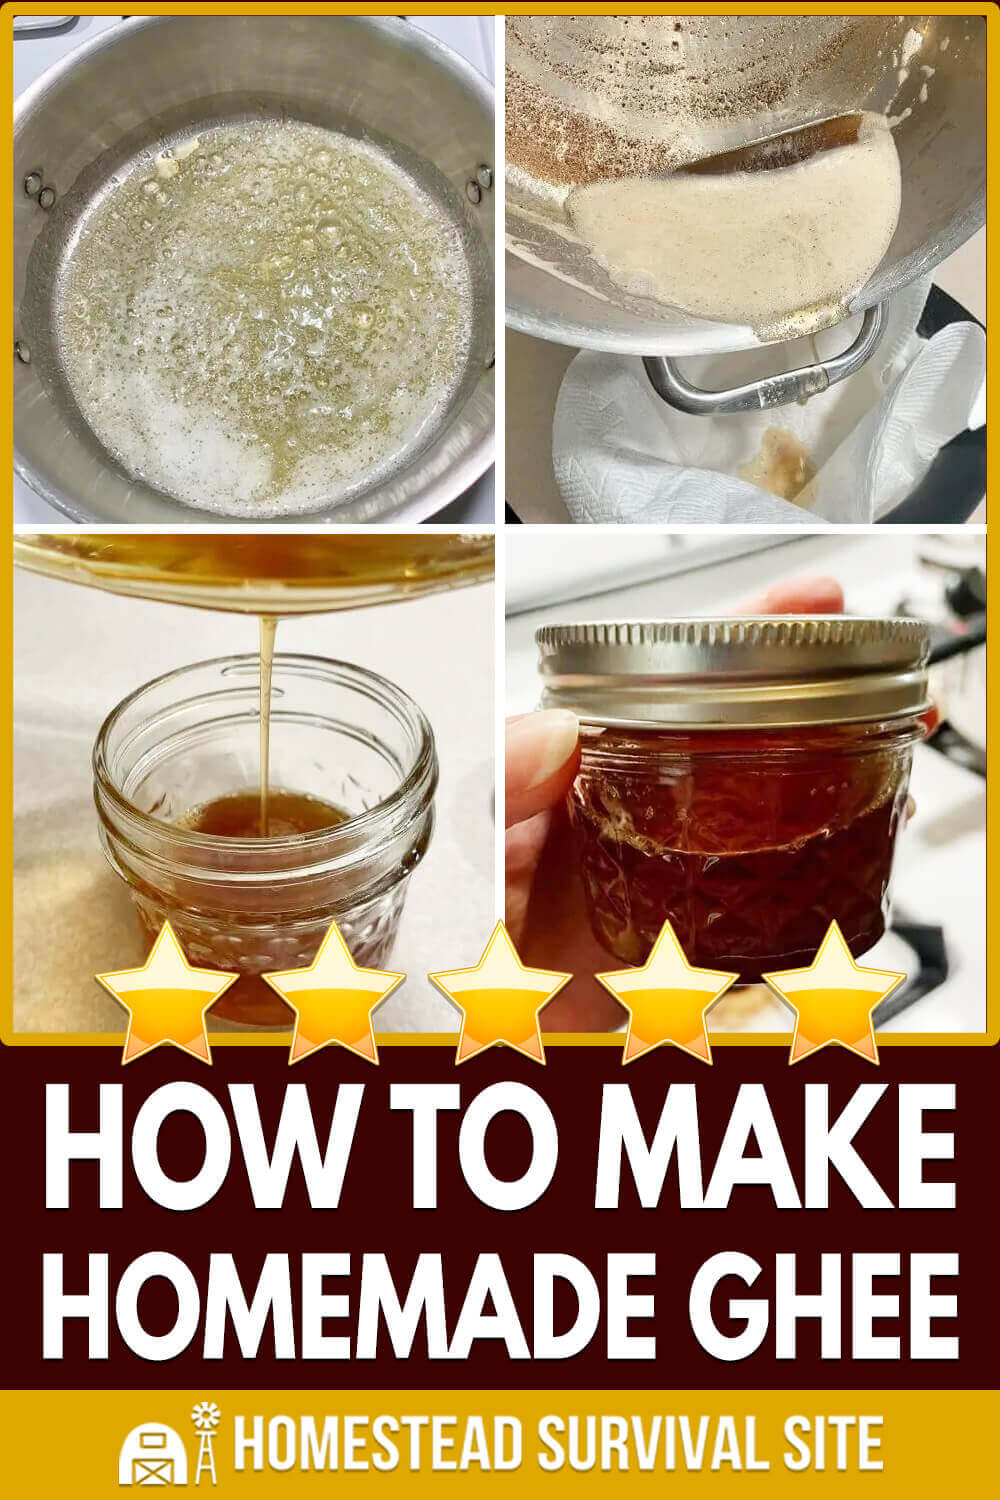 How To Make Homemade Ghee